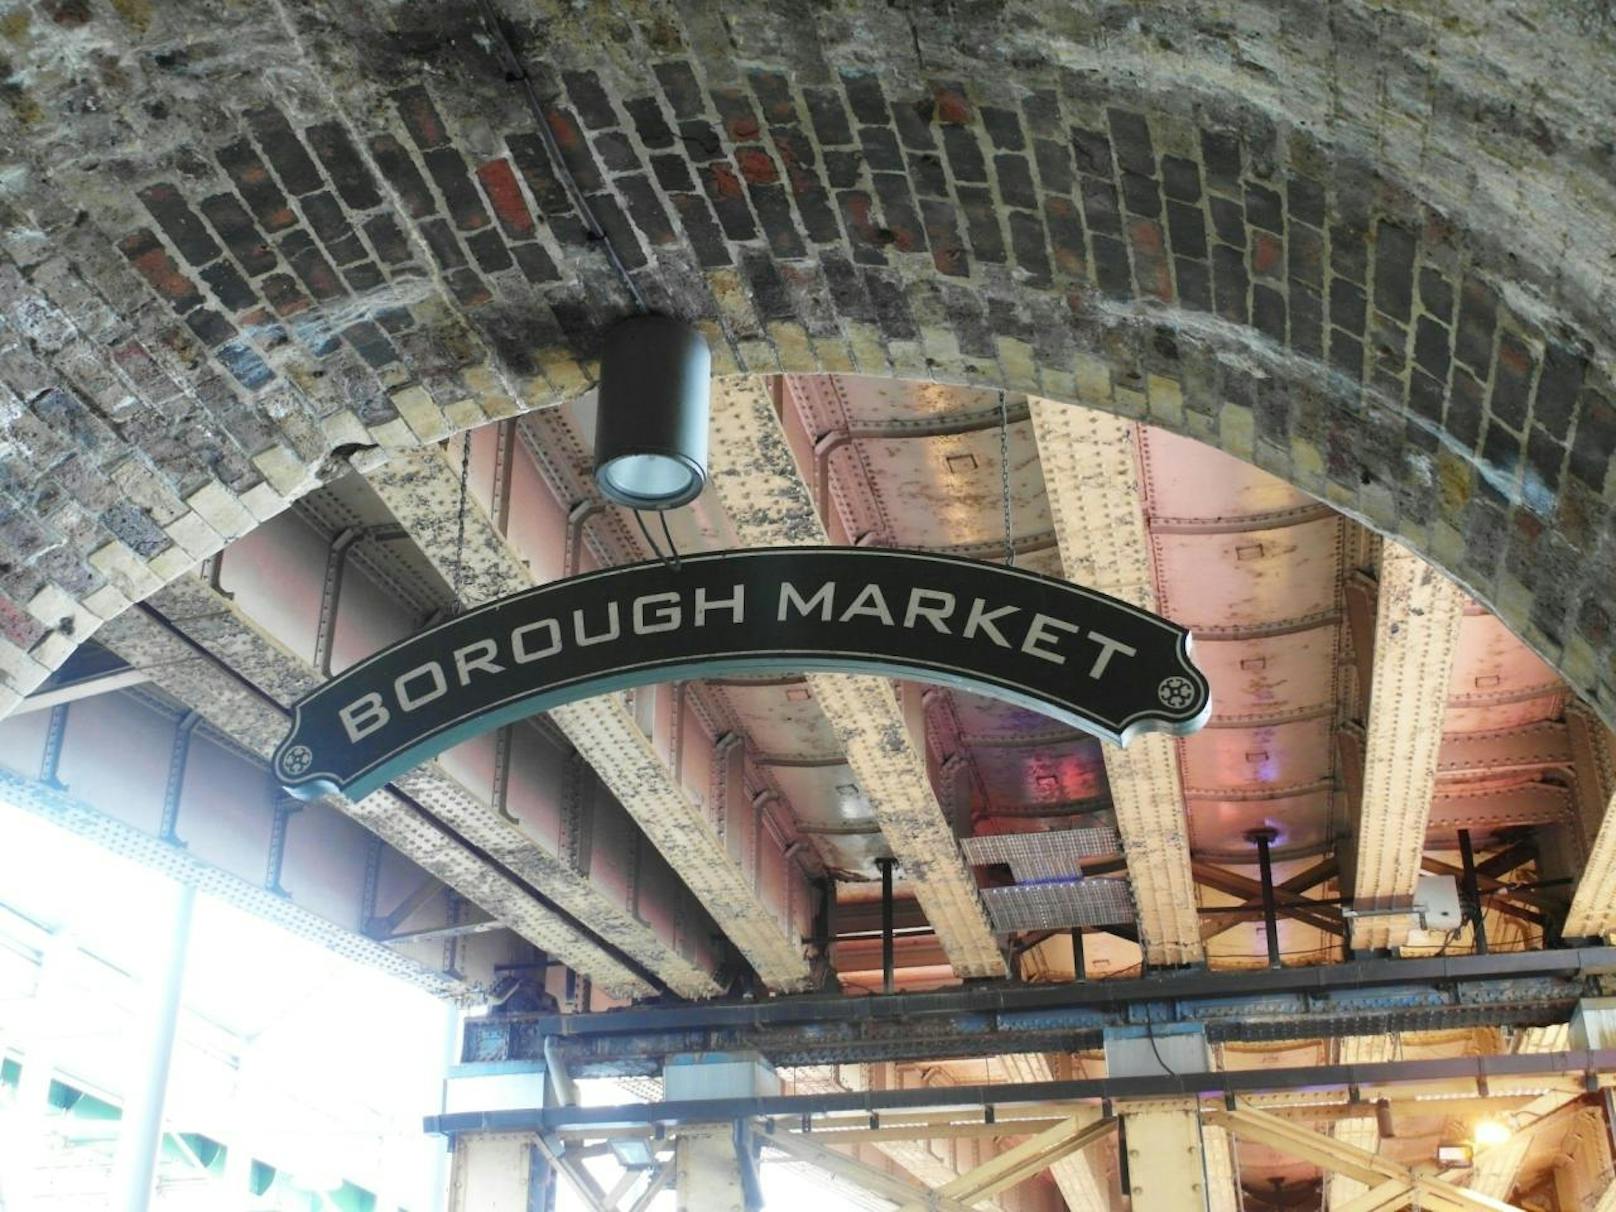 Ausflugstipps für Schlechtwettertage >>>
Im Bild: Borough Market in London